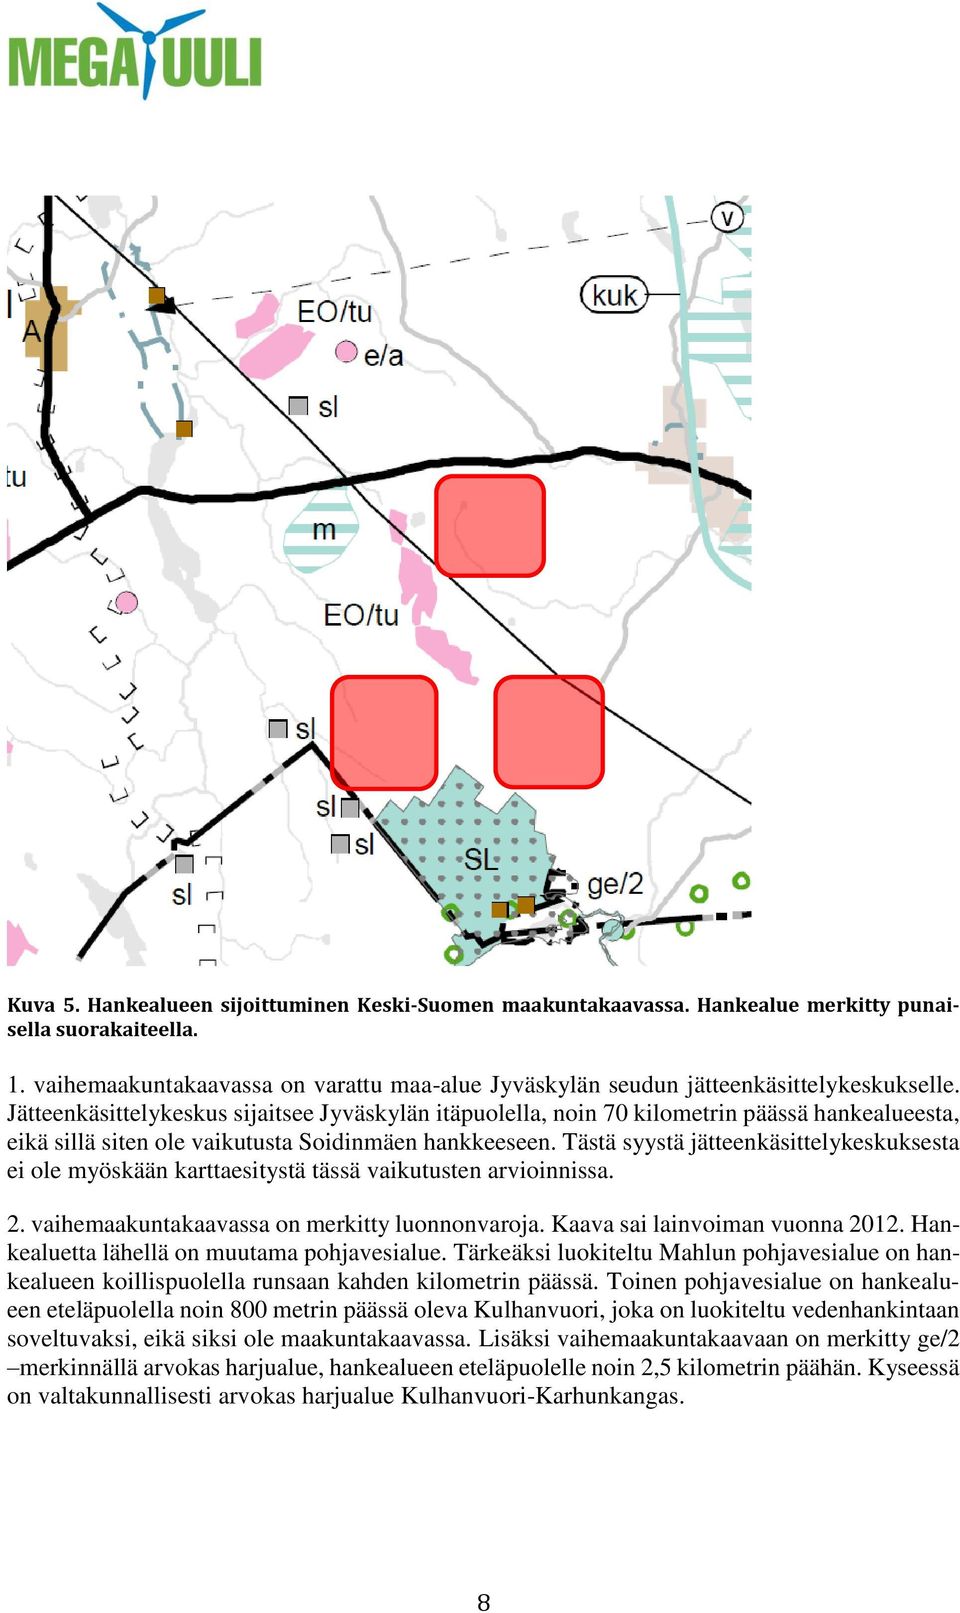 Jätteenkäsittelykeskus sijaitsee Jyväskylän itäpuolella, noin 70 kilometrin päässä hankealueesta, eikä sillä siten ole vaikutusta Soidinmäen hankkeeseen.